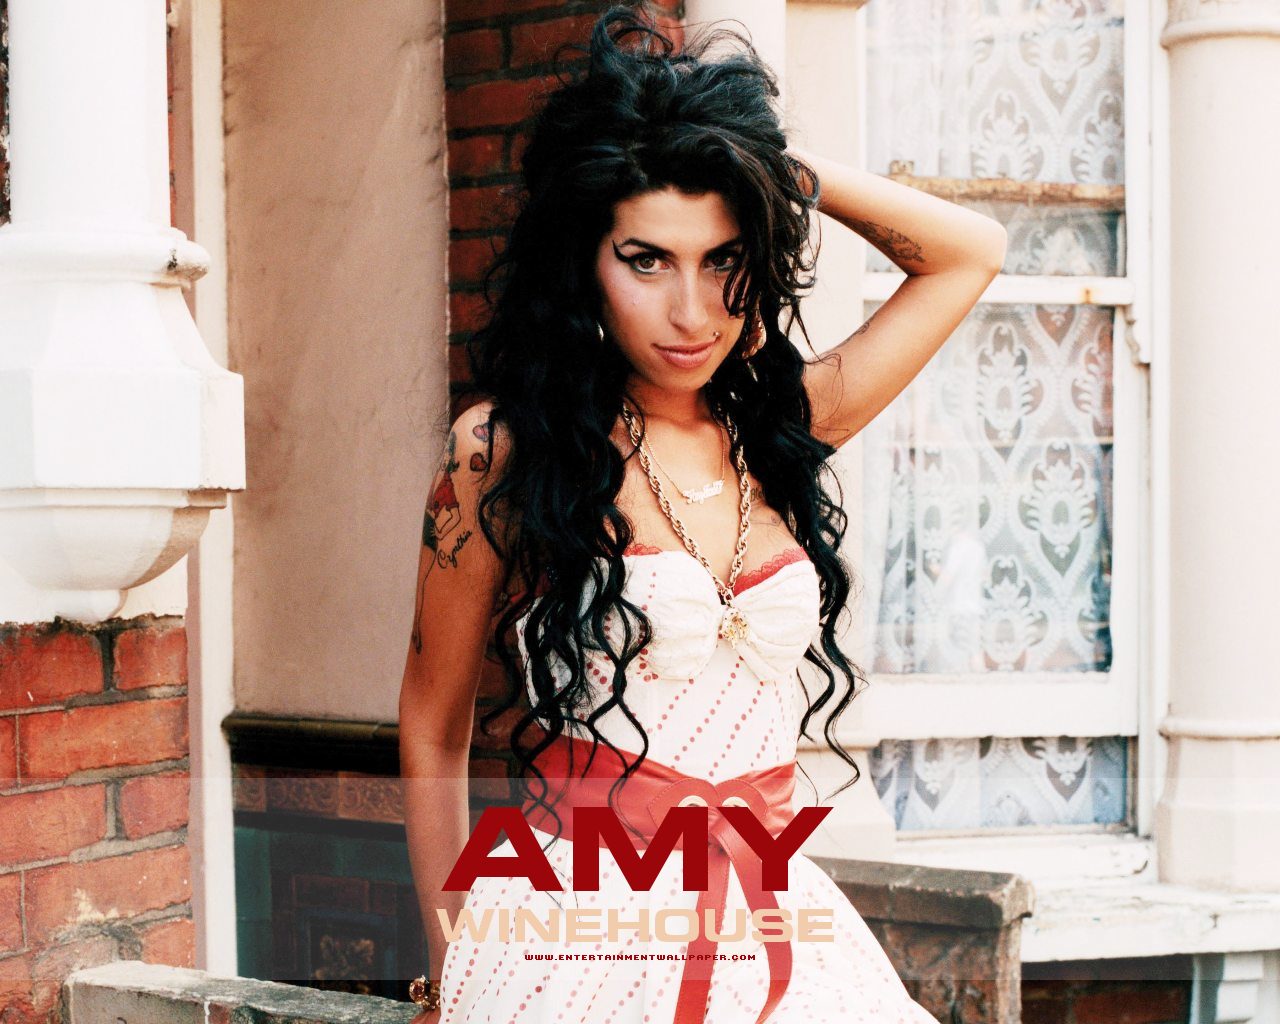 Fond d'ecran Amy Winehouse Music